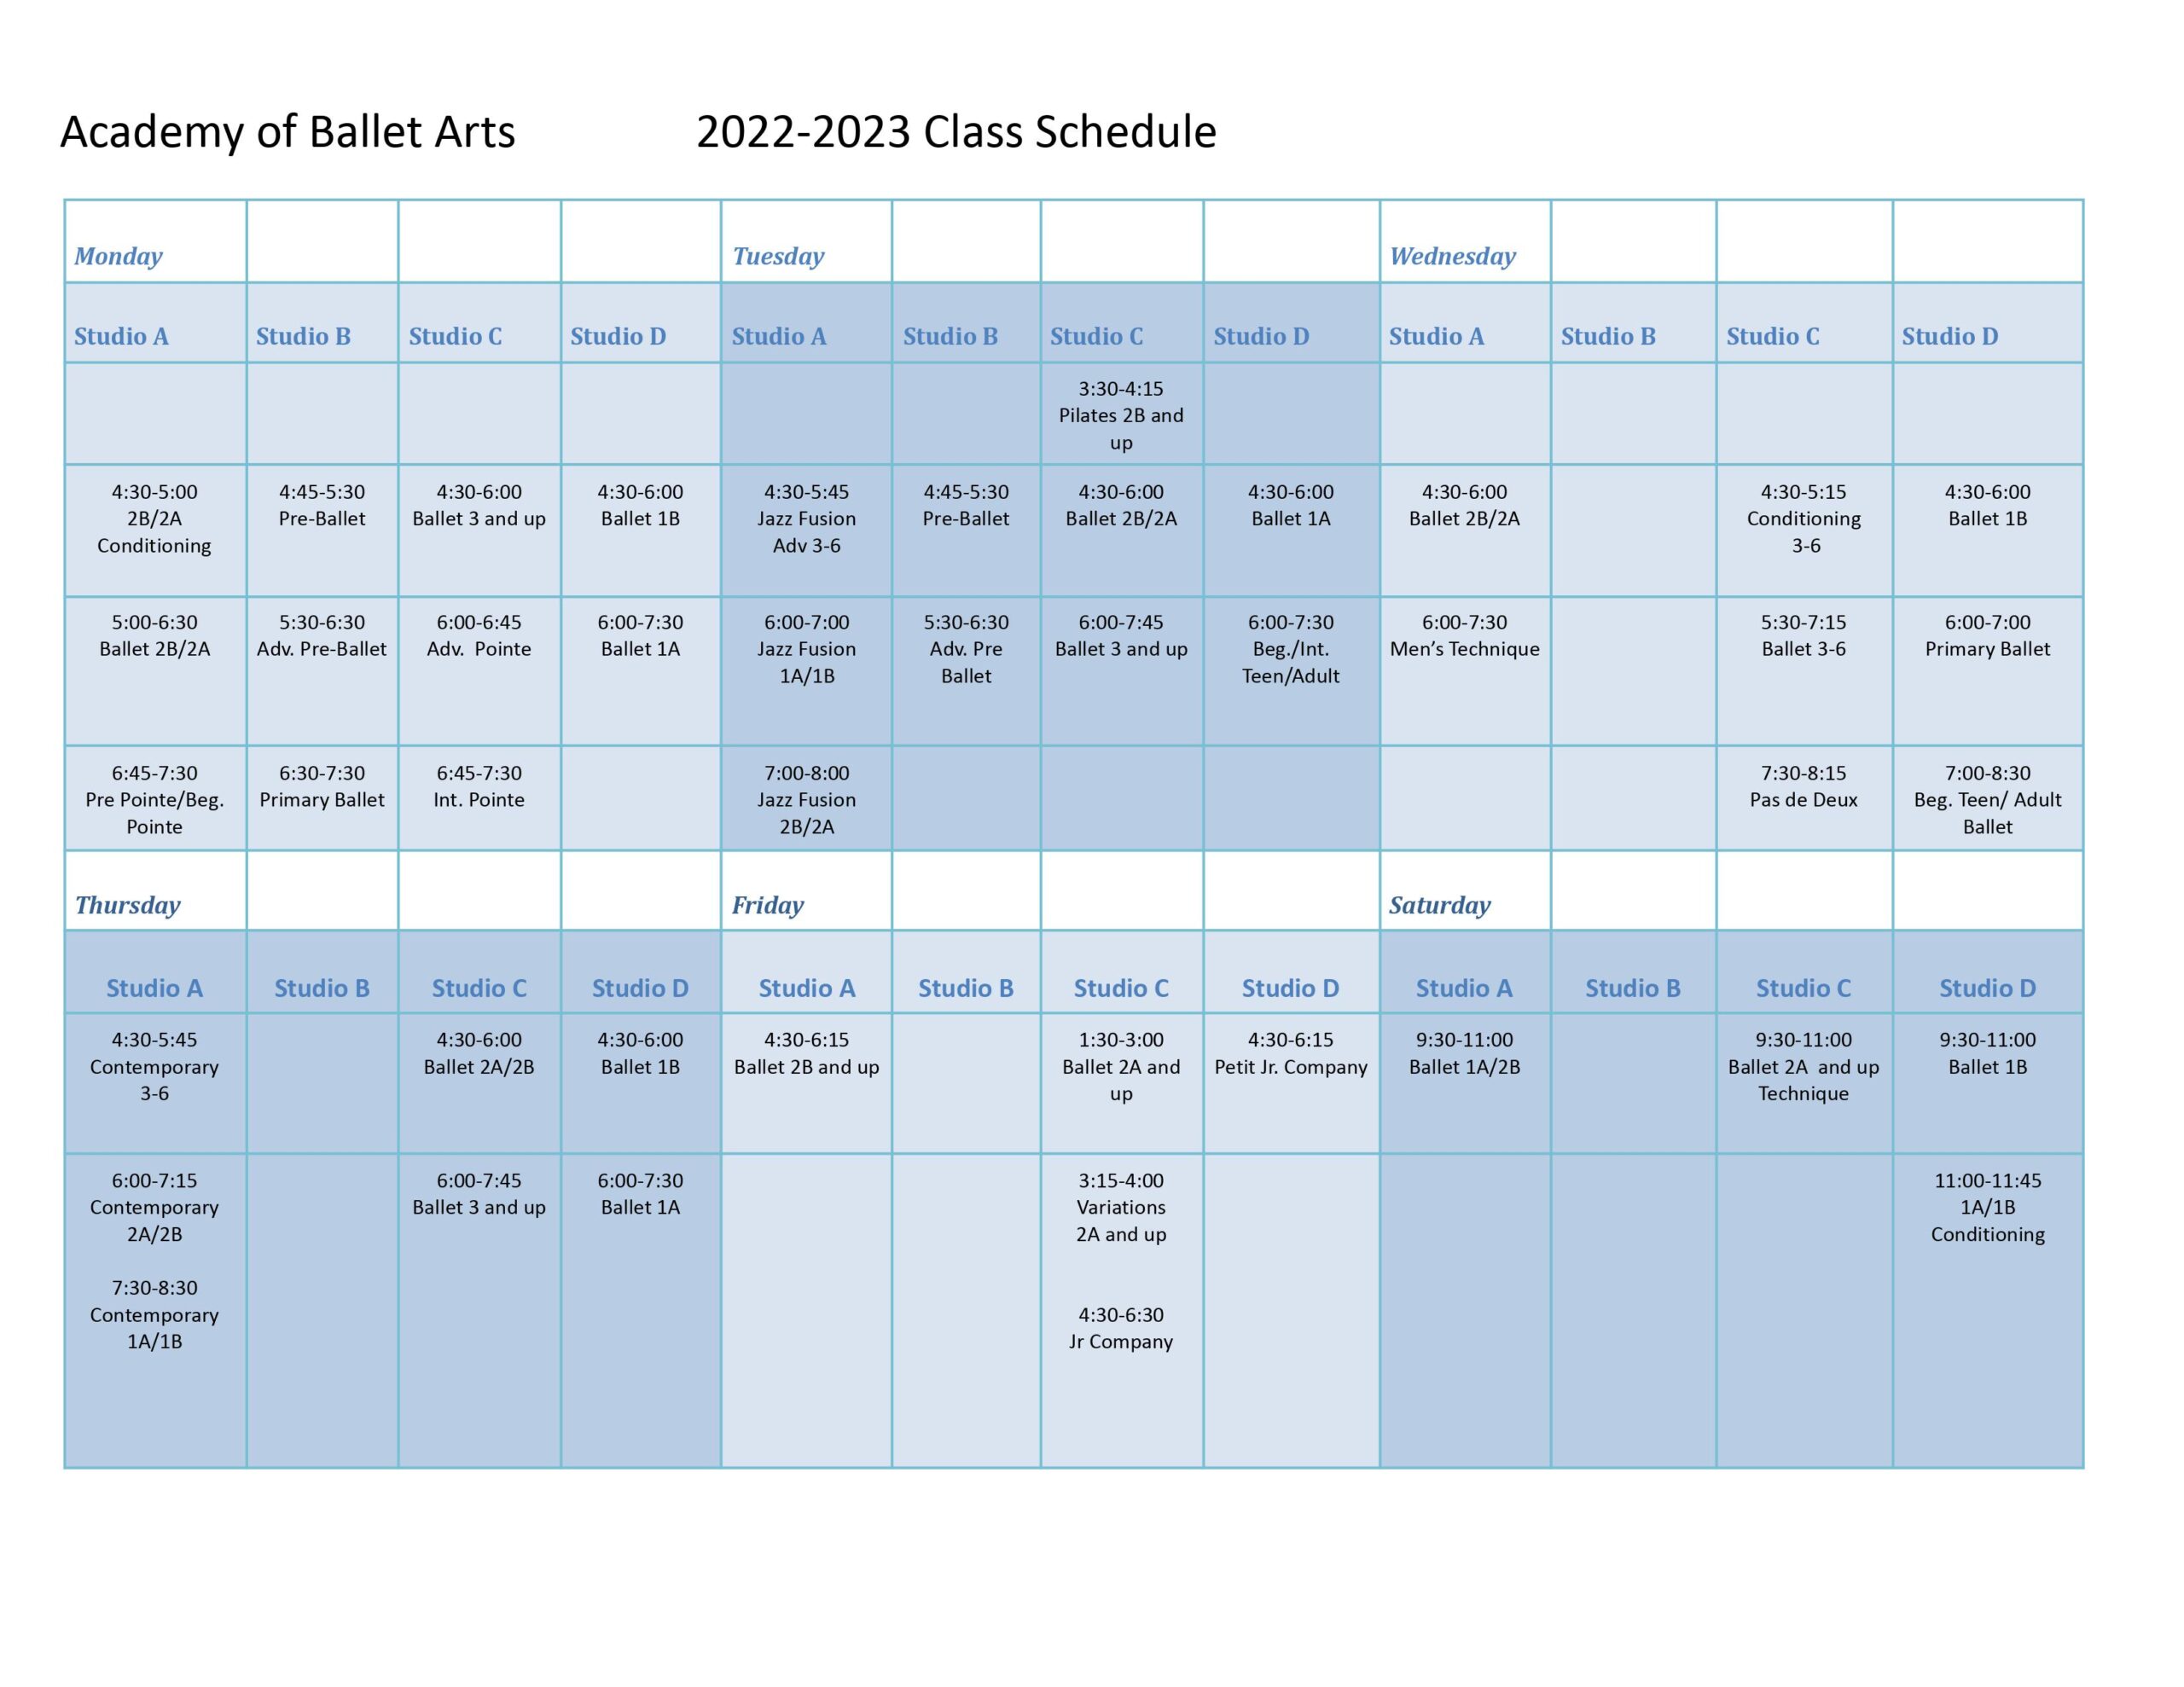 Academy of Ballet Arts schedule